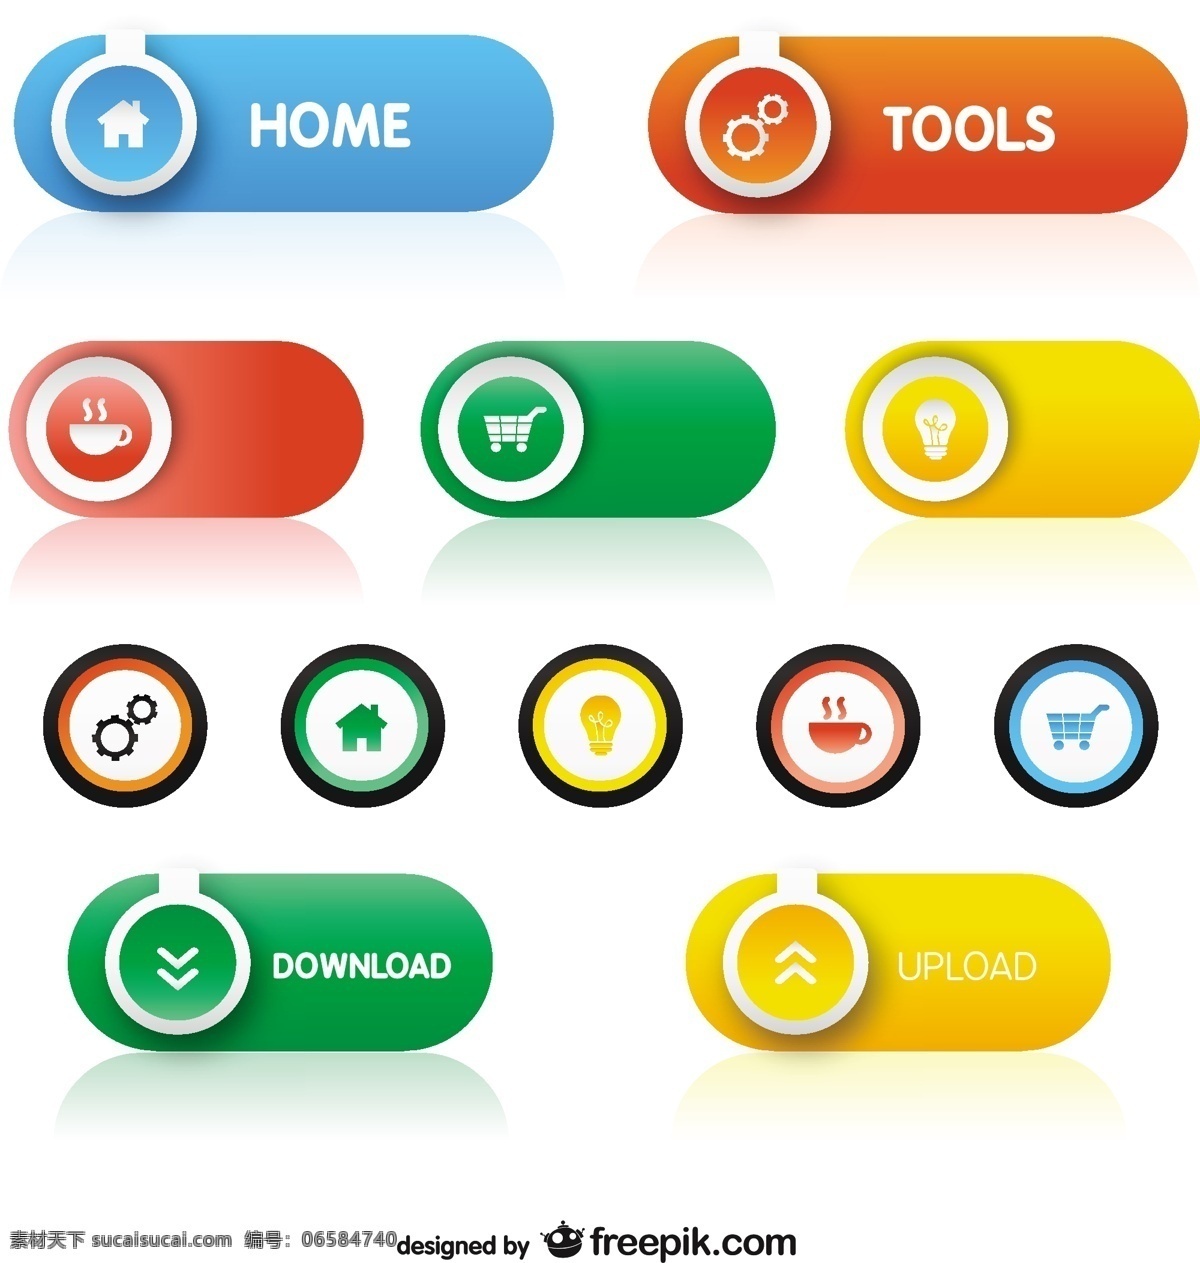 彩色按钮组 按钮 家庭 网络 工具 丰富多彩 元素 网页按钮 网页元素 网络按钮 包 下载按钮 白色